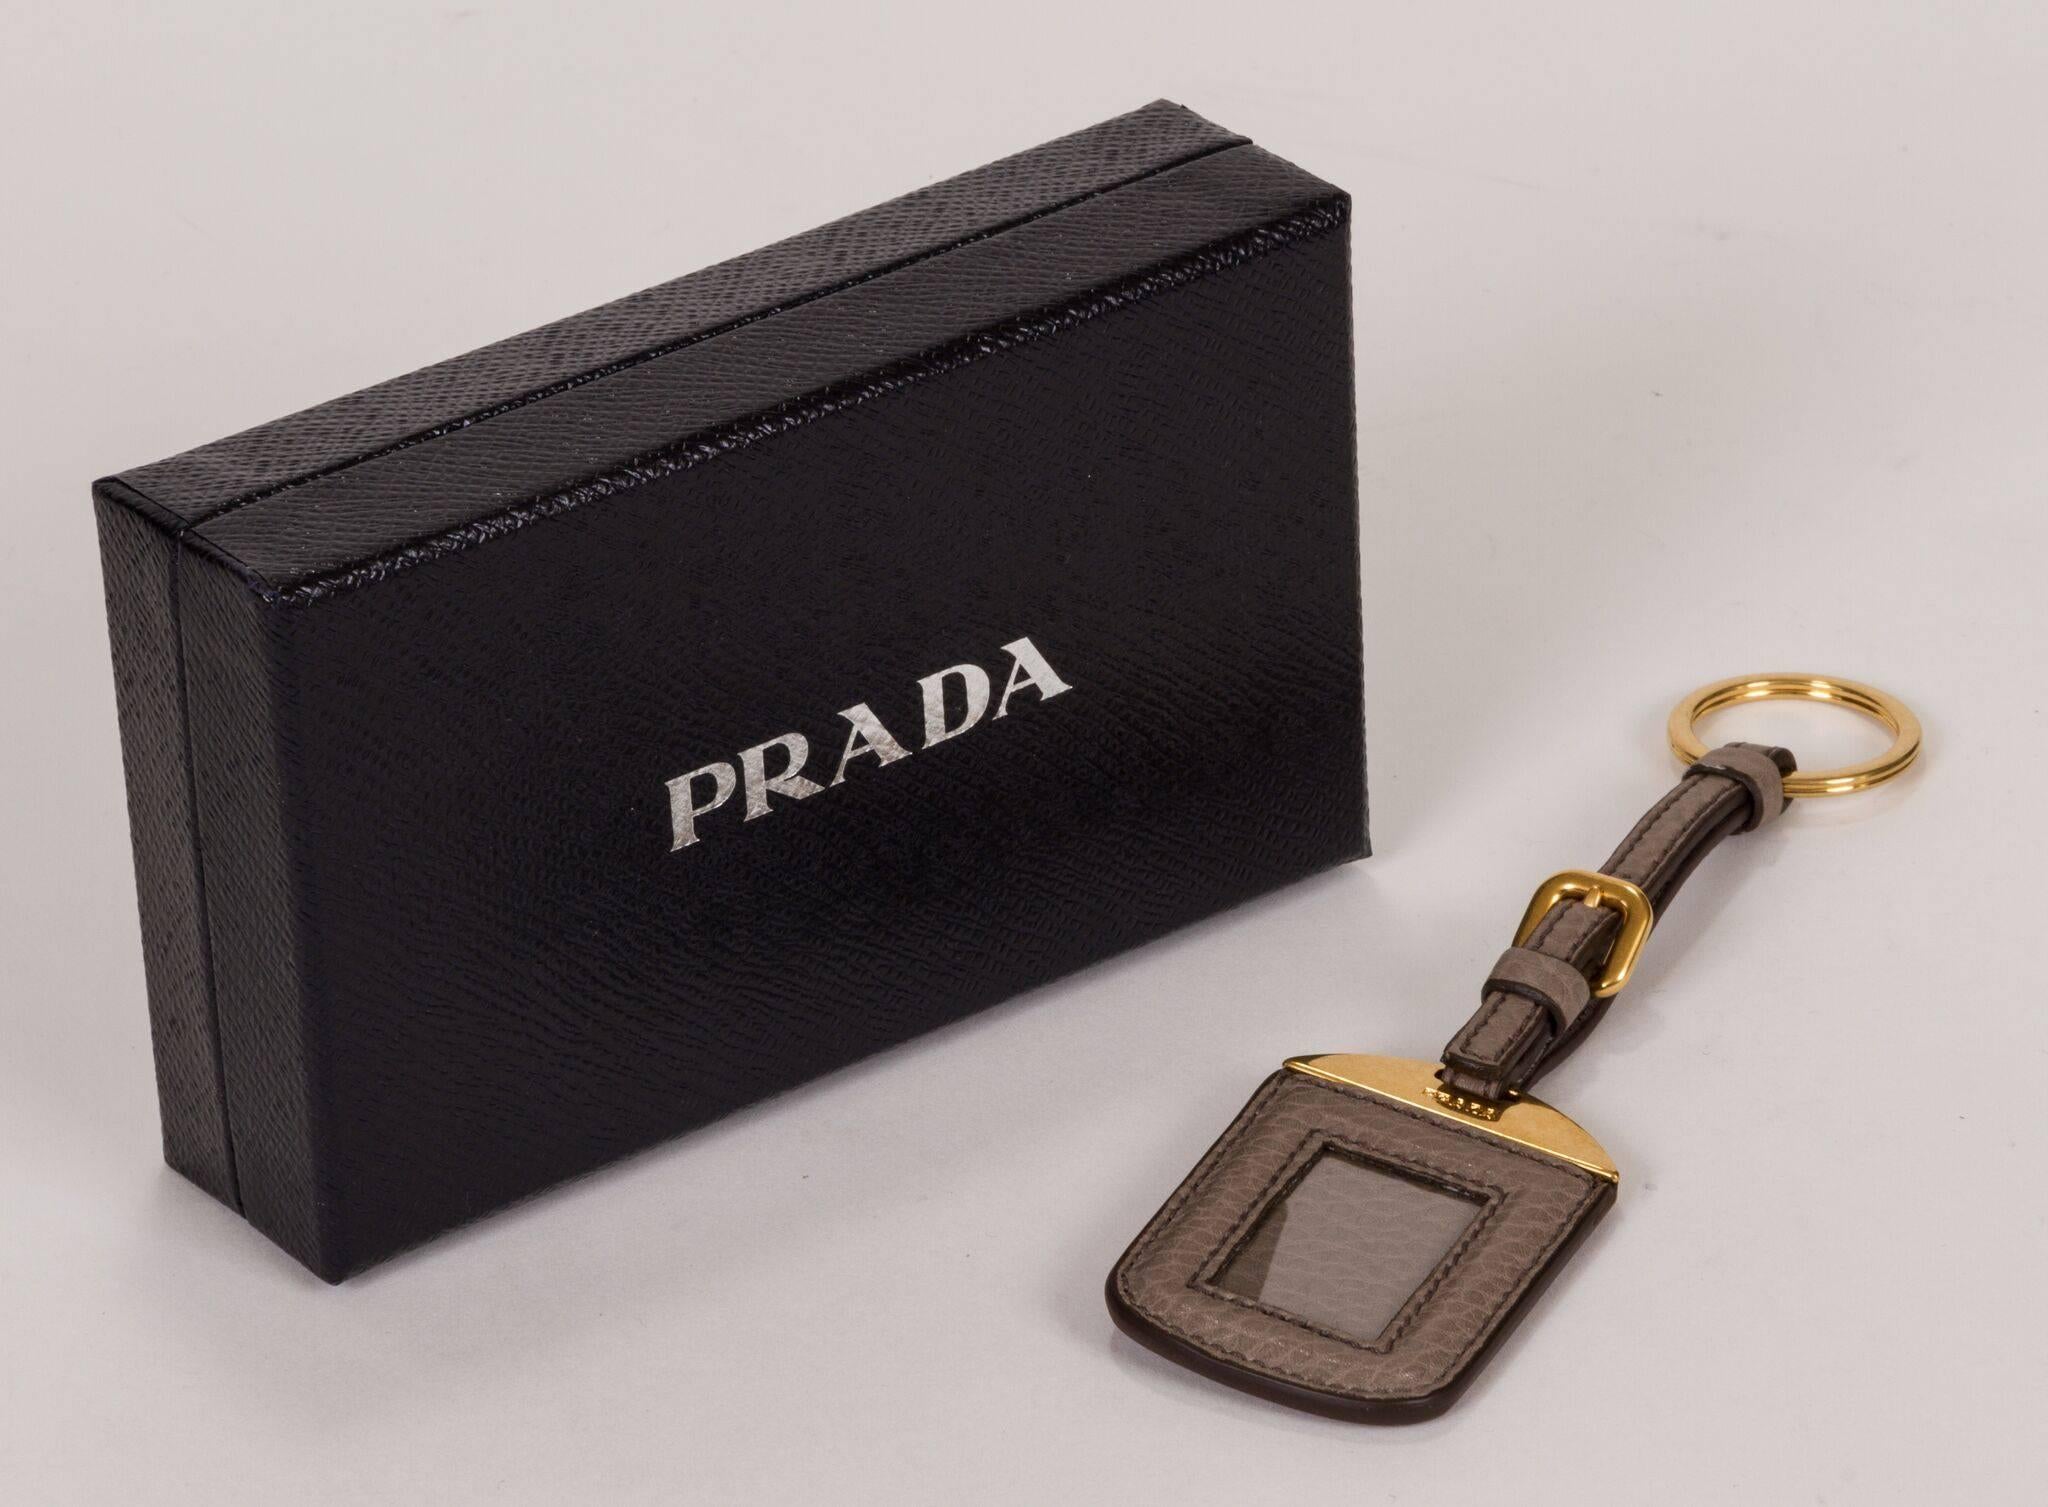 Nouveau porte-clés et porte-noms Prada 2014. Cuir gris et matériel de couleur or. Livré avec la boîte et l'étiquette d'origine.
